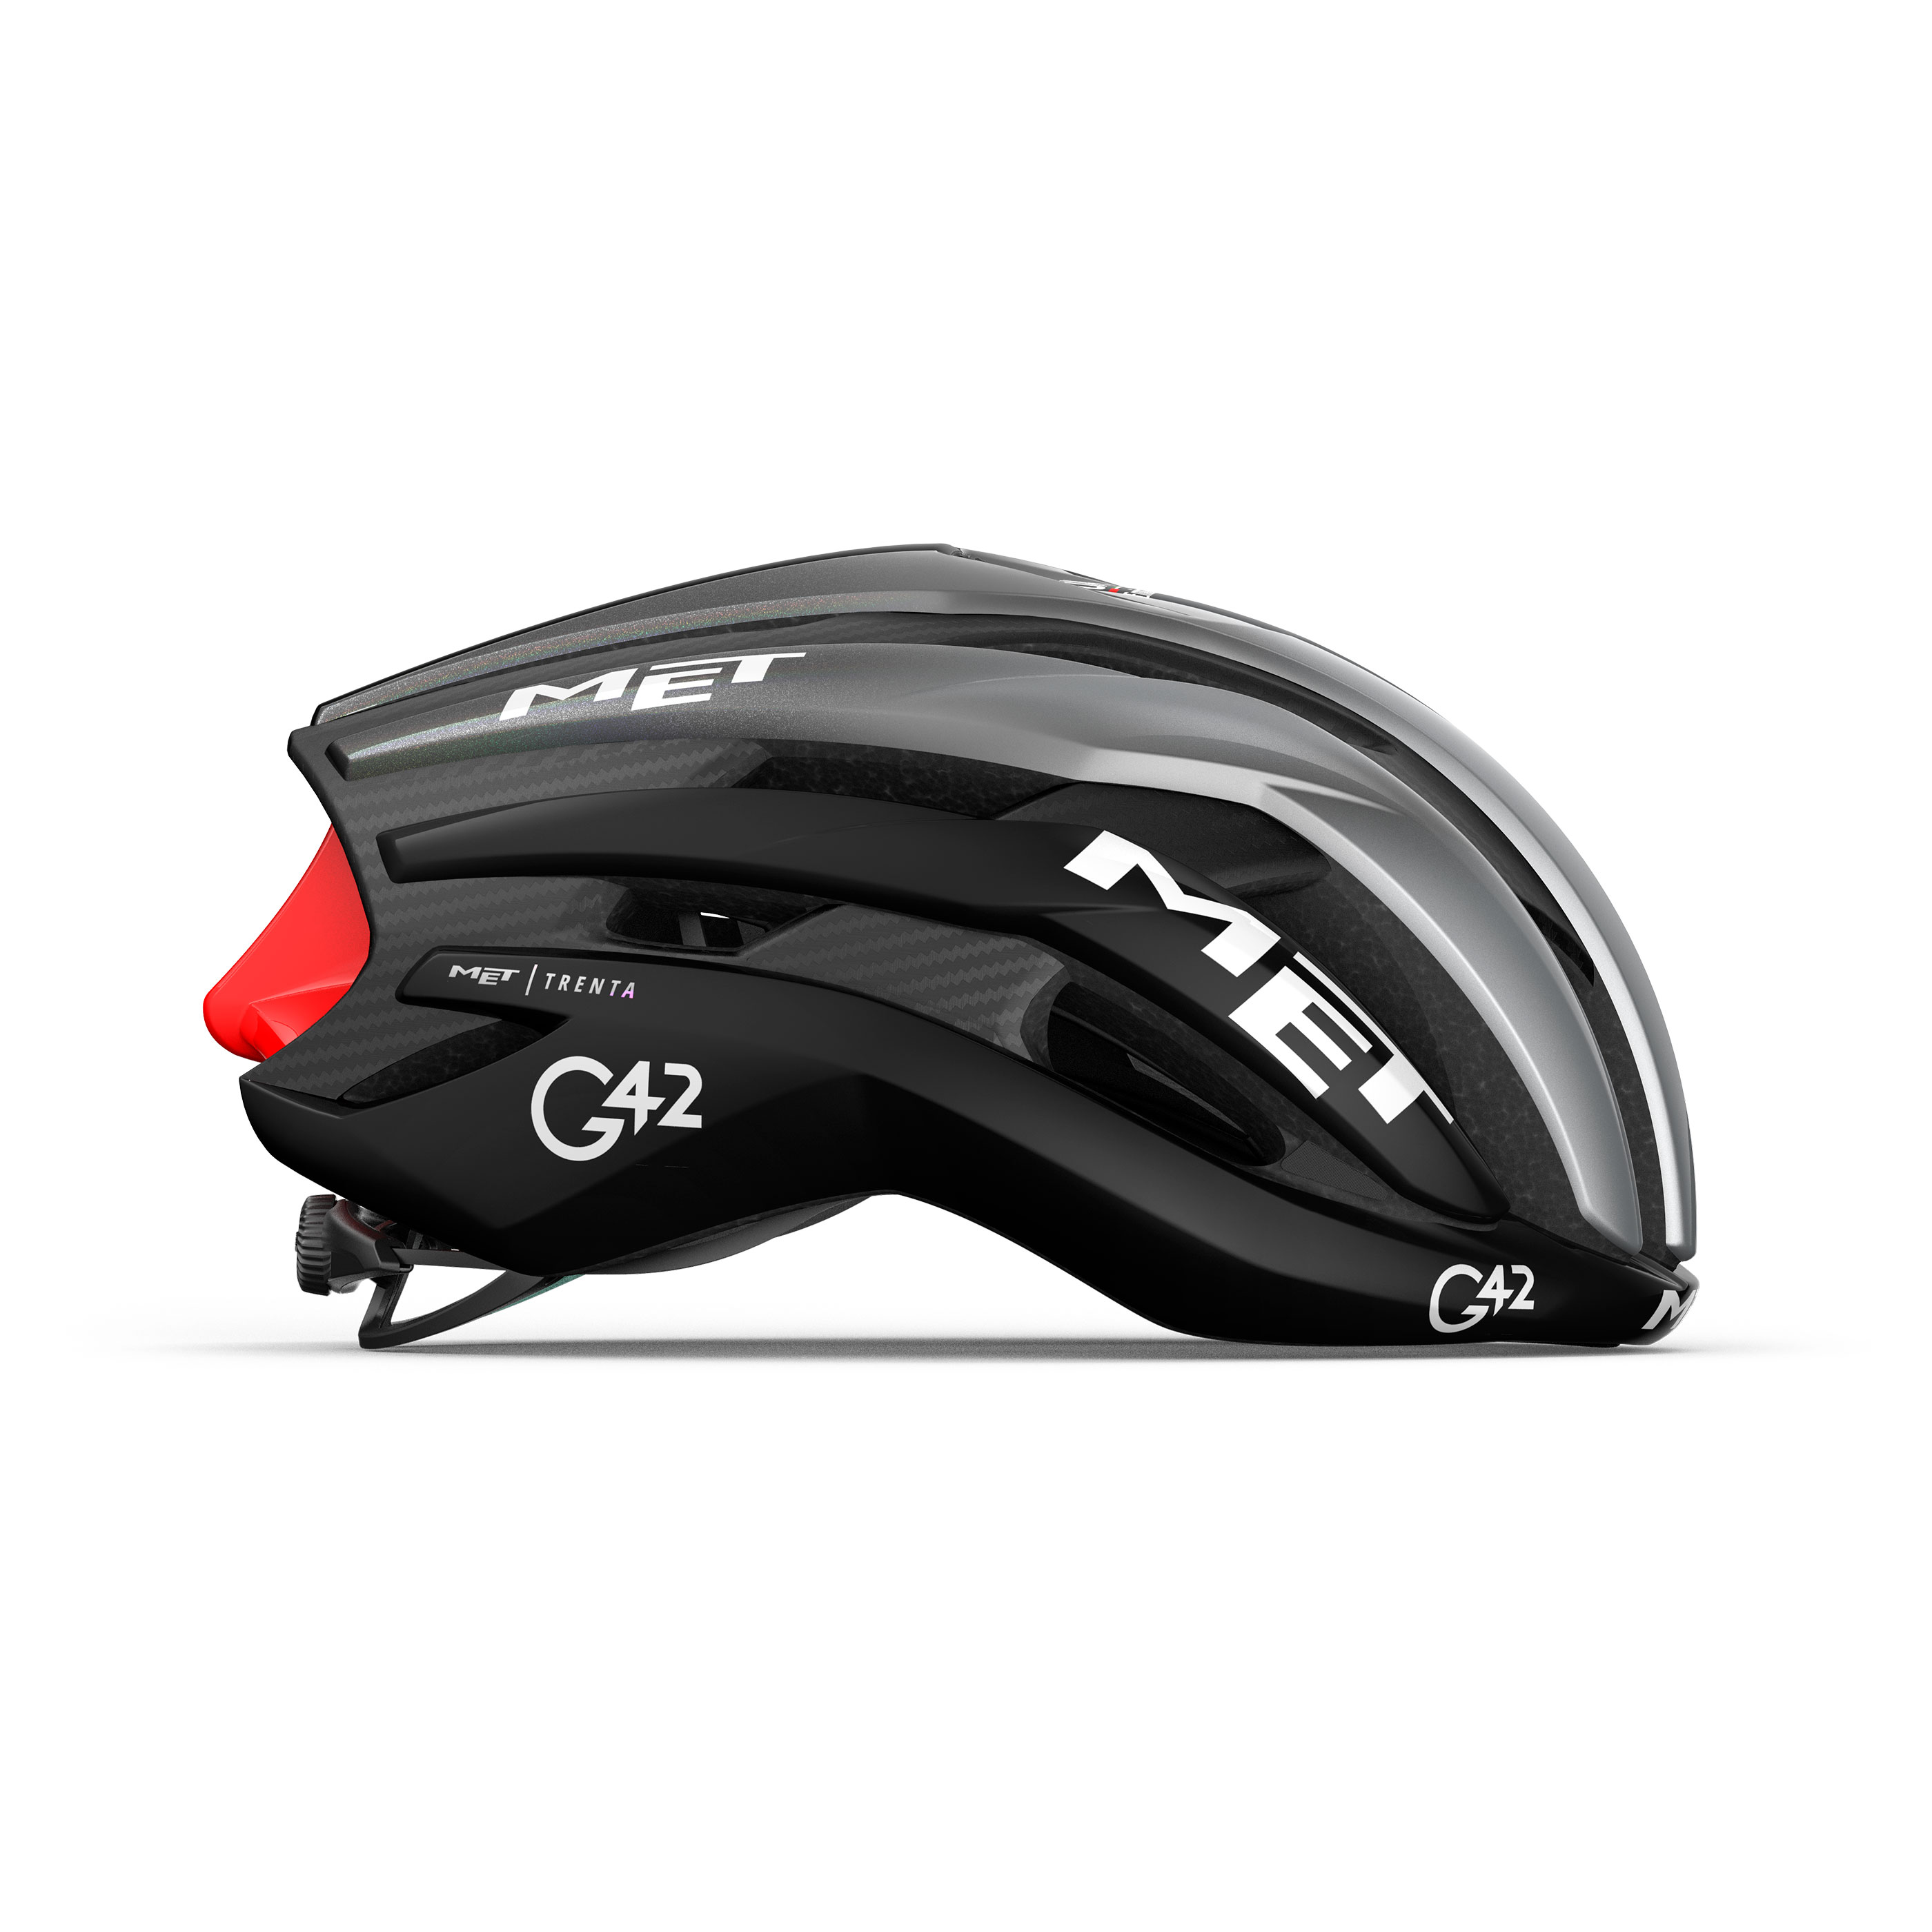 met-trenta-3k-carbon-mips-road-cycling-helmet-M146TE4-side